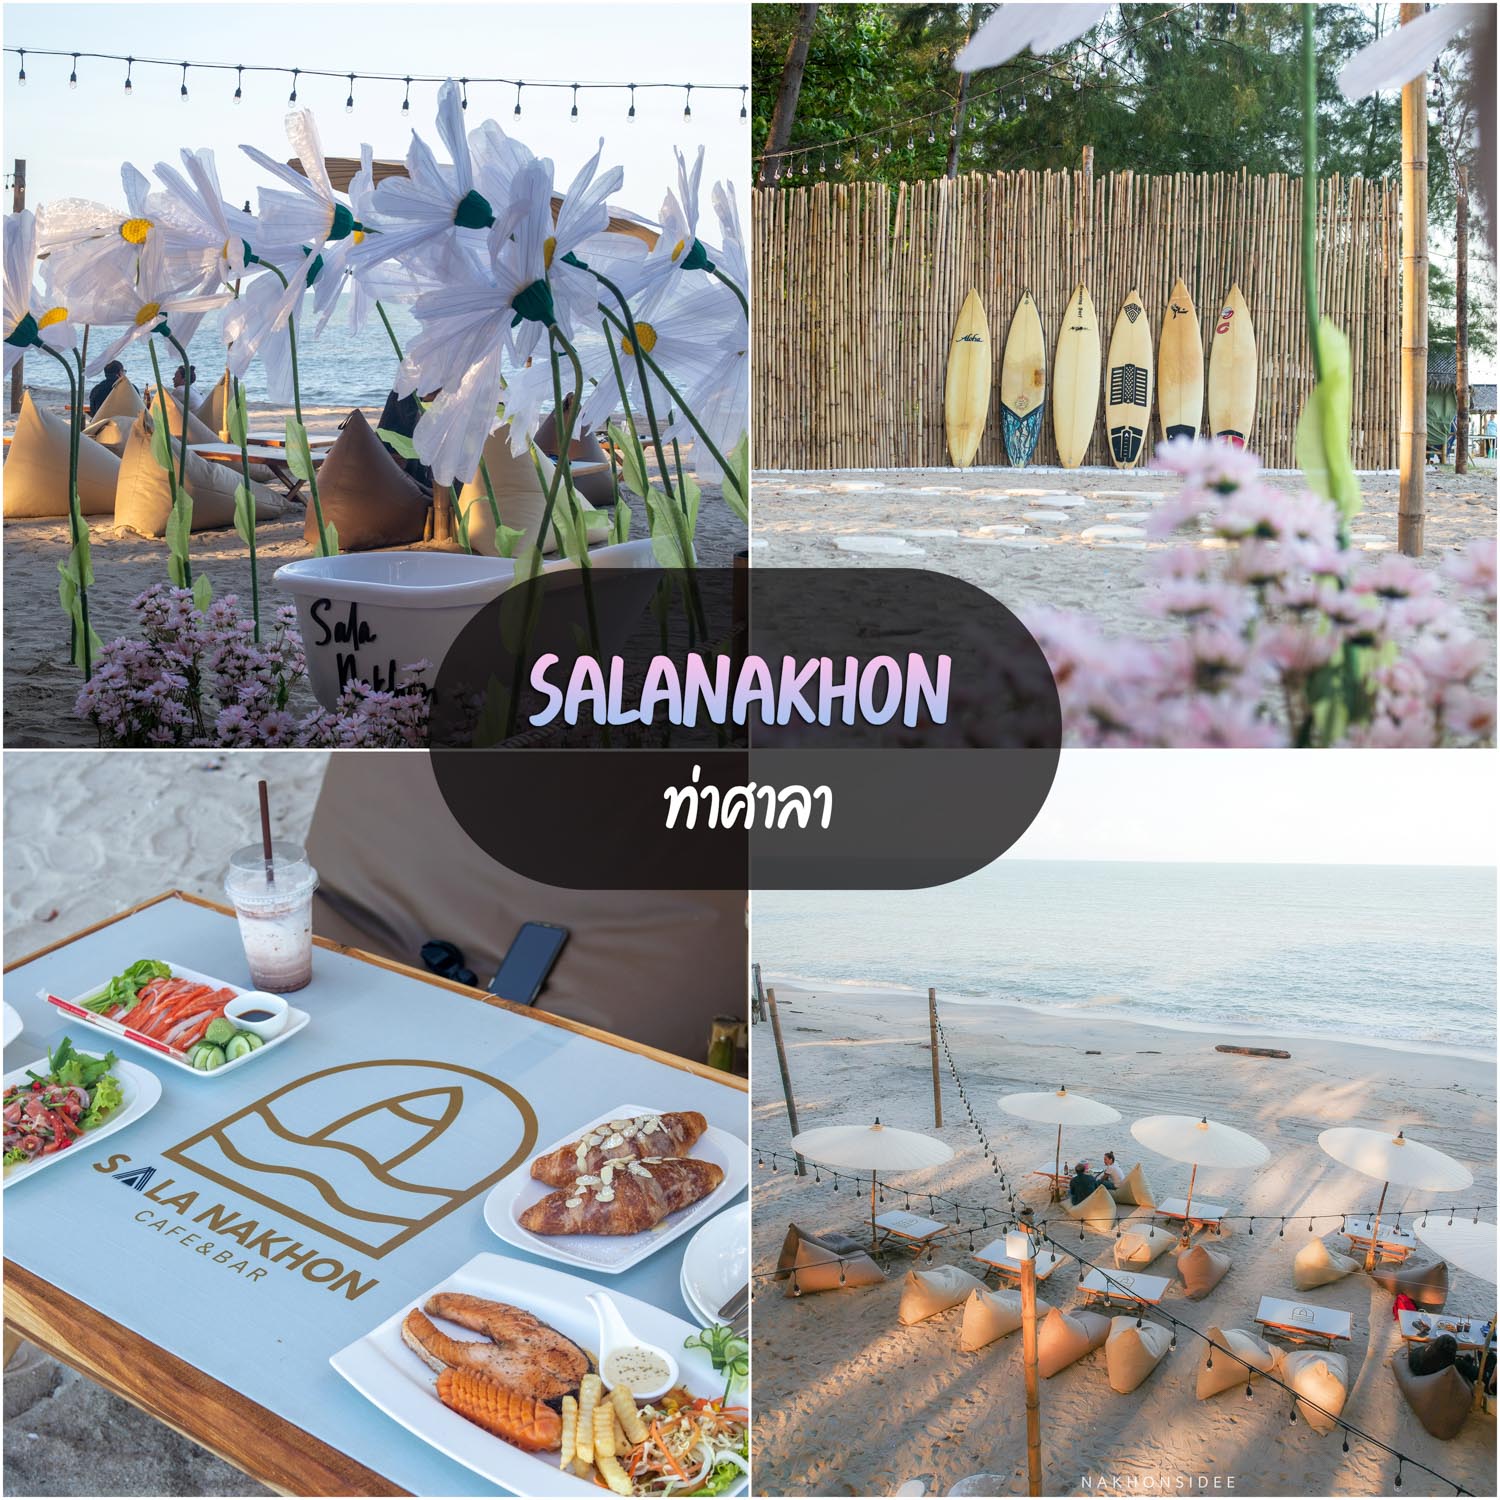 Salanakhon-Cafe ที่เที่ยวท่าศาลา-จุดเช็คอินสวยๆนครศรีธรรมราช ที่เที่ยวนครศรีธรรมราช,จุดเช็คอินนครศรีธรรมราช,ร้านอาหารนครศรีธรรมราช